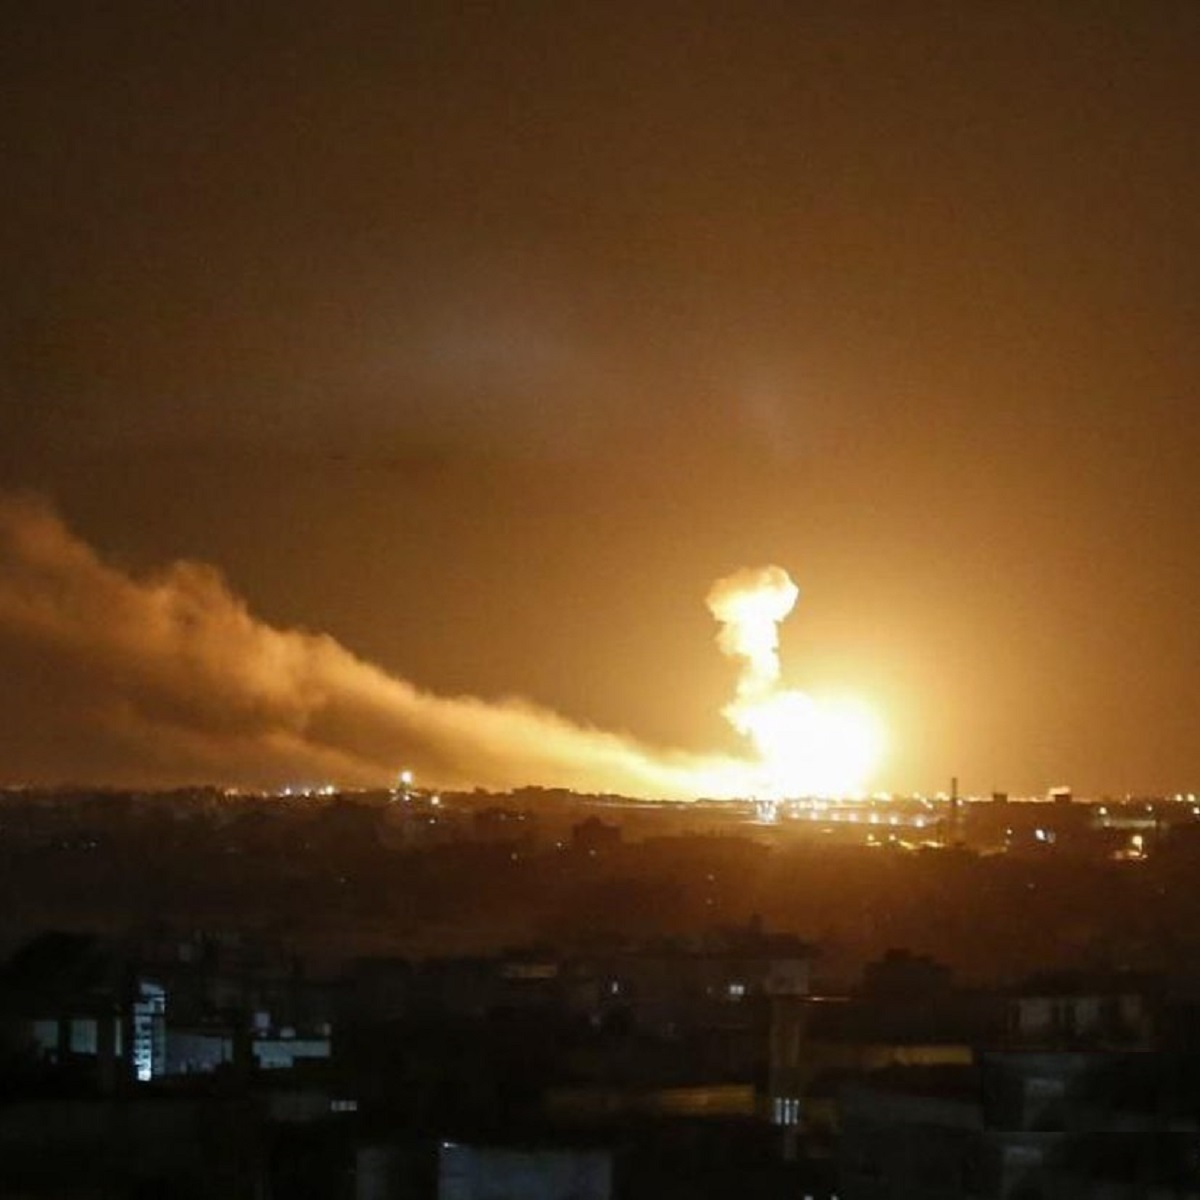 حمله هوایی اسراییل به غزه در پاسخ به حملات راکتی